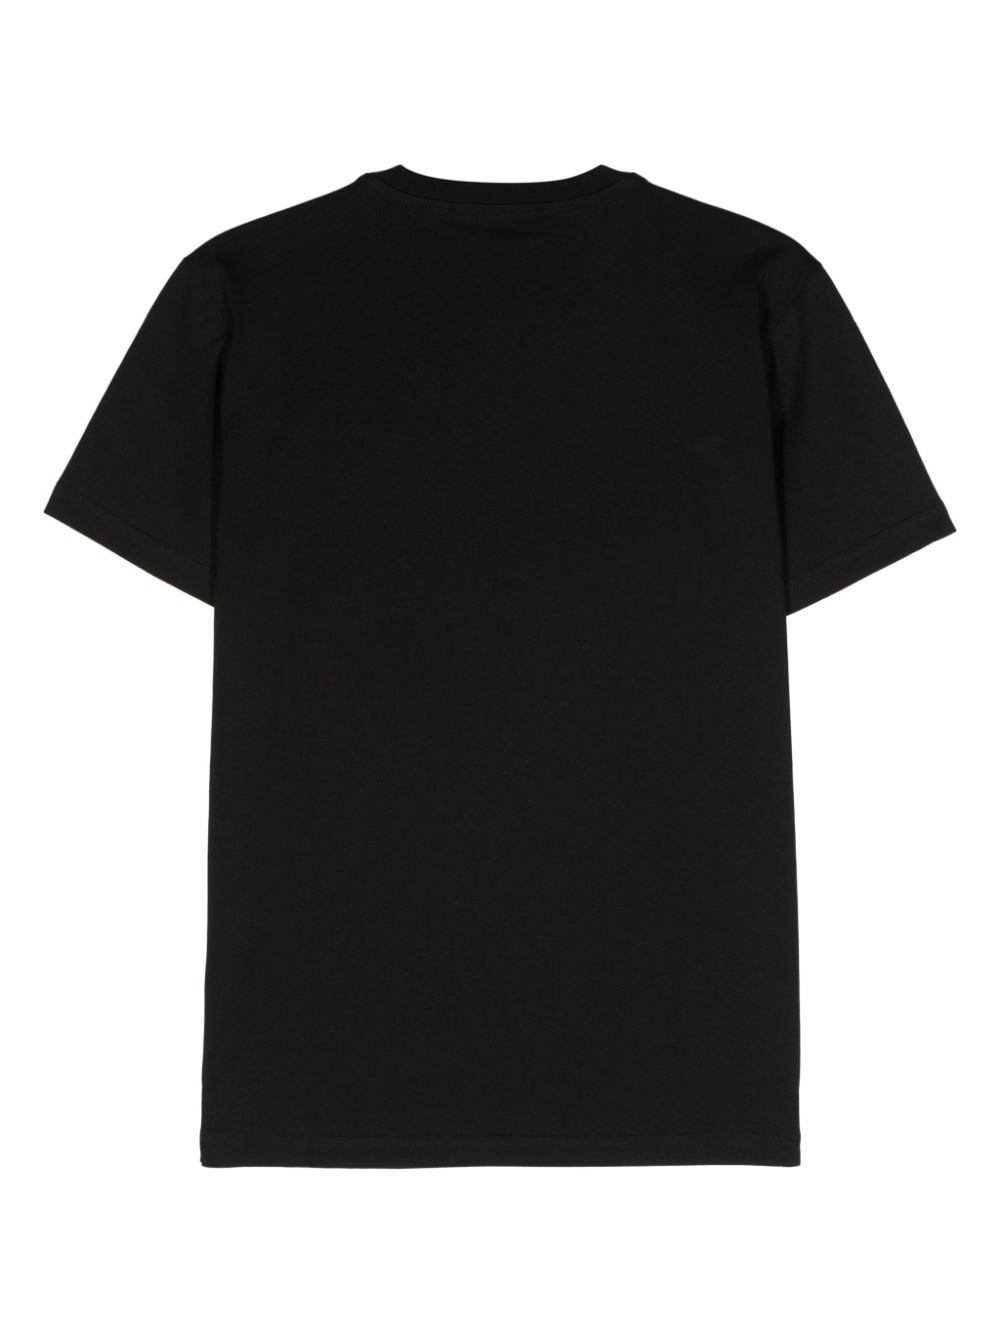 Black logotype T-shirt